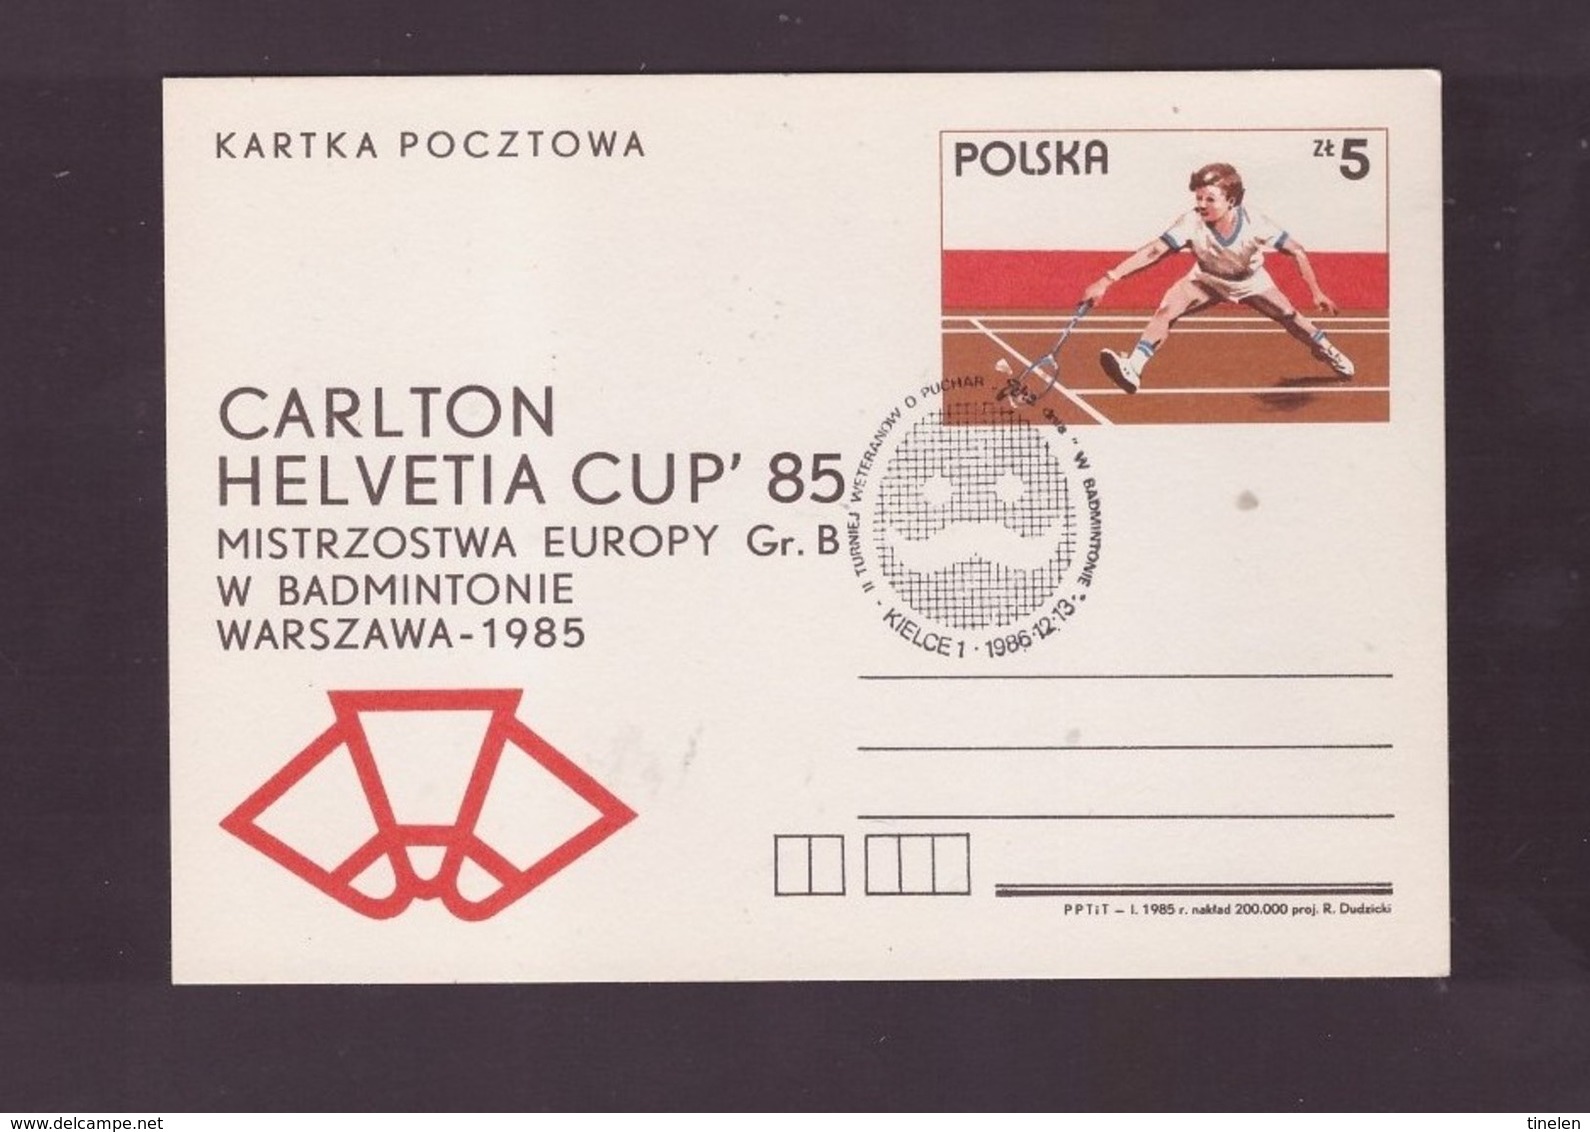 POLONIA  - 26 1 1985 CARLTON ELVETIA CUP'85 - Badminton